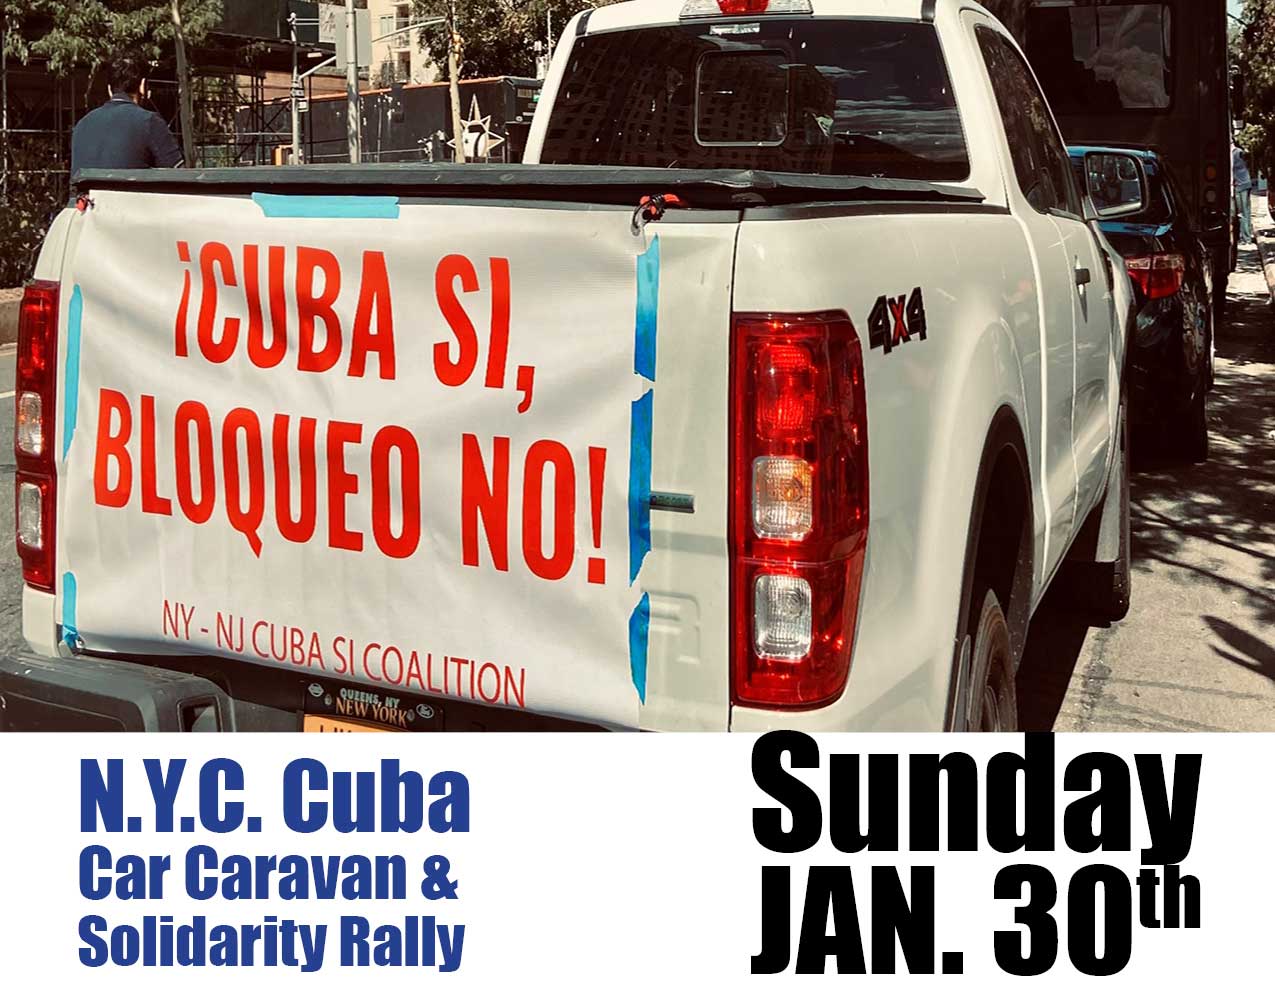 NYC Car Caravan in Solidarity with Cuba